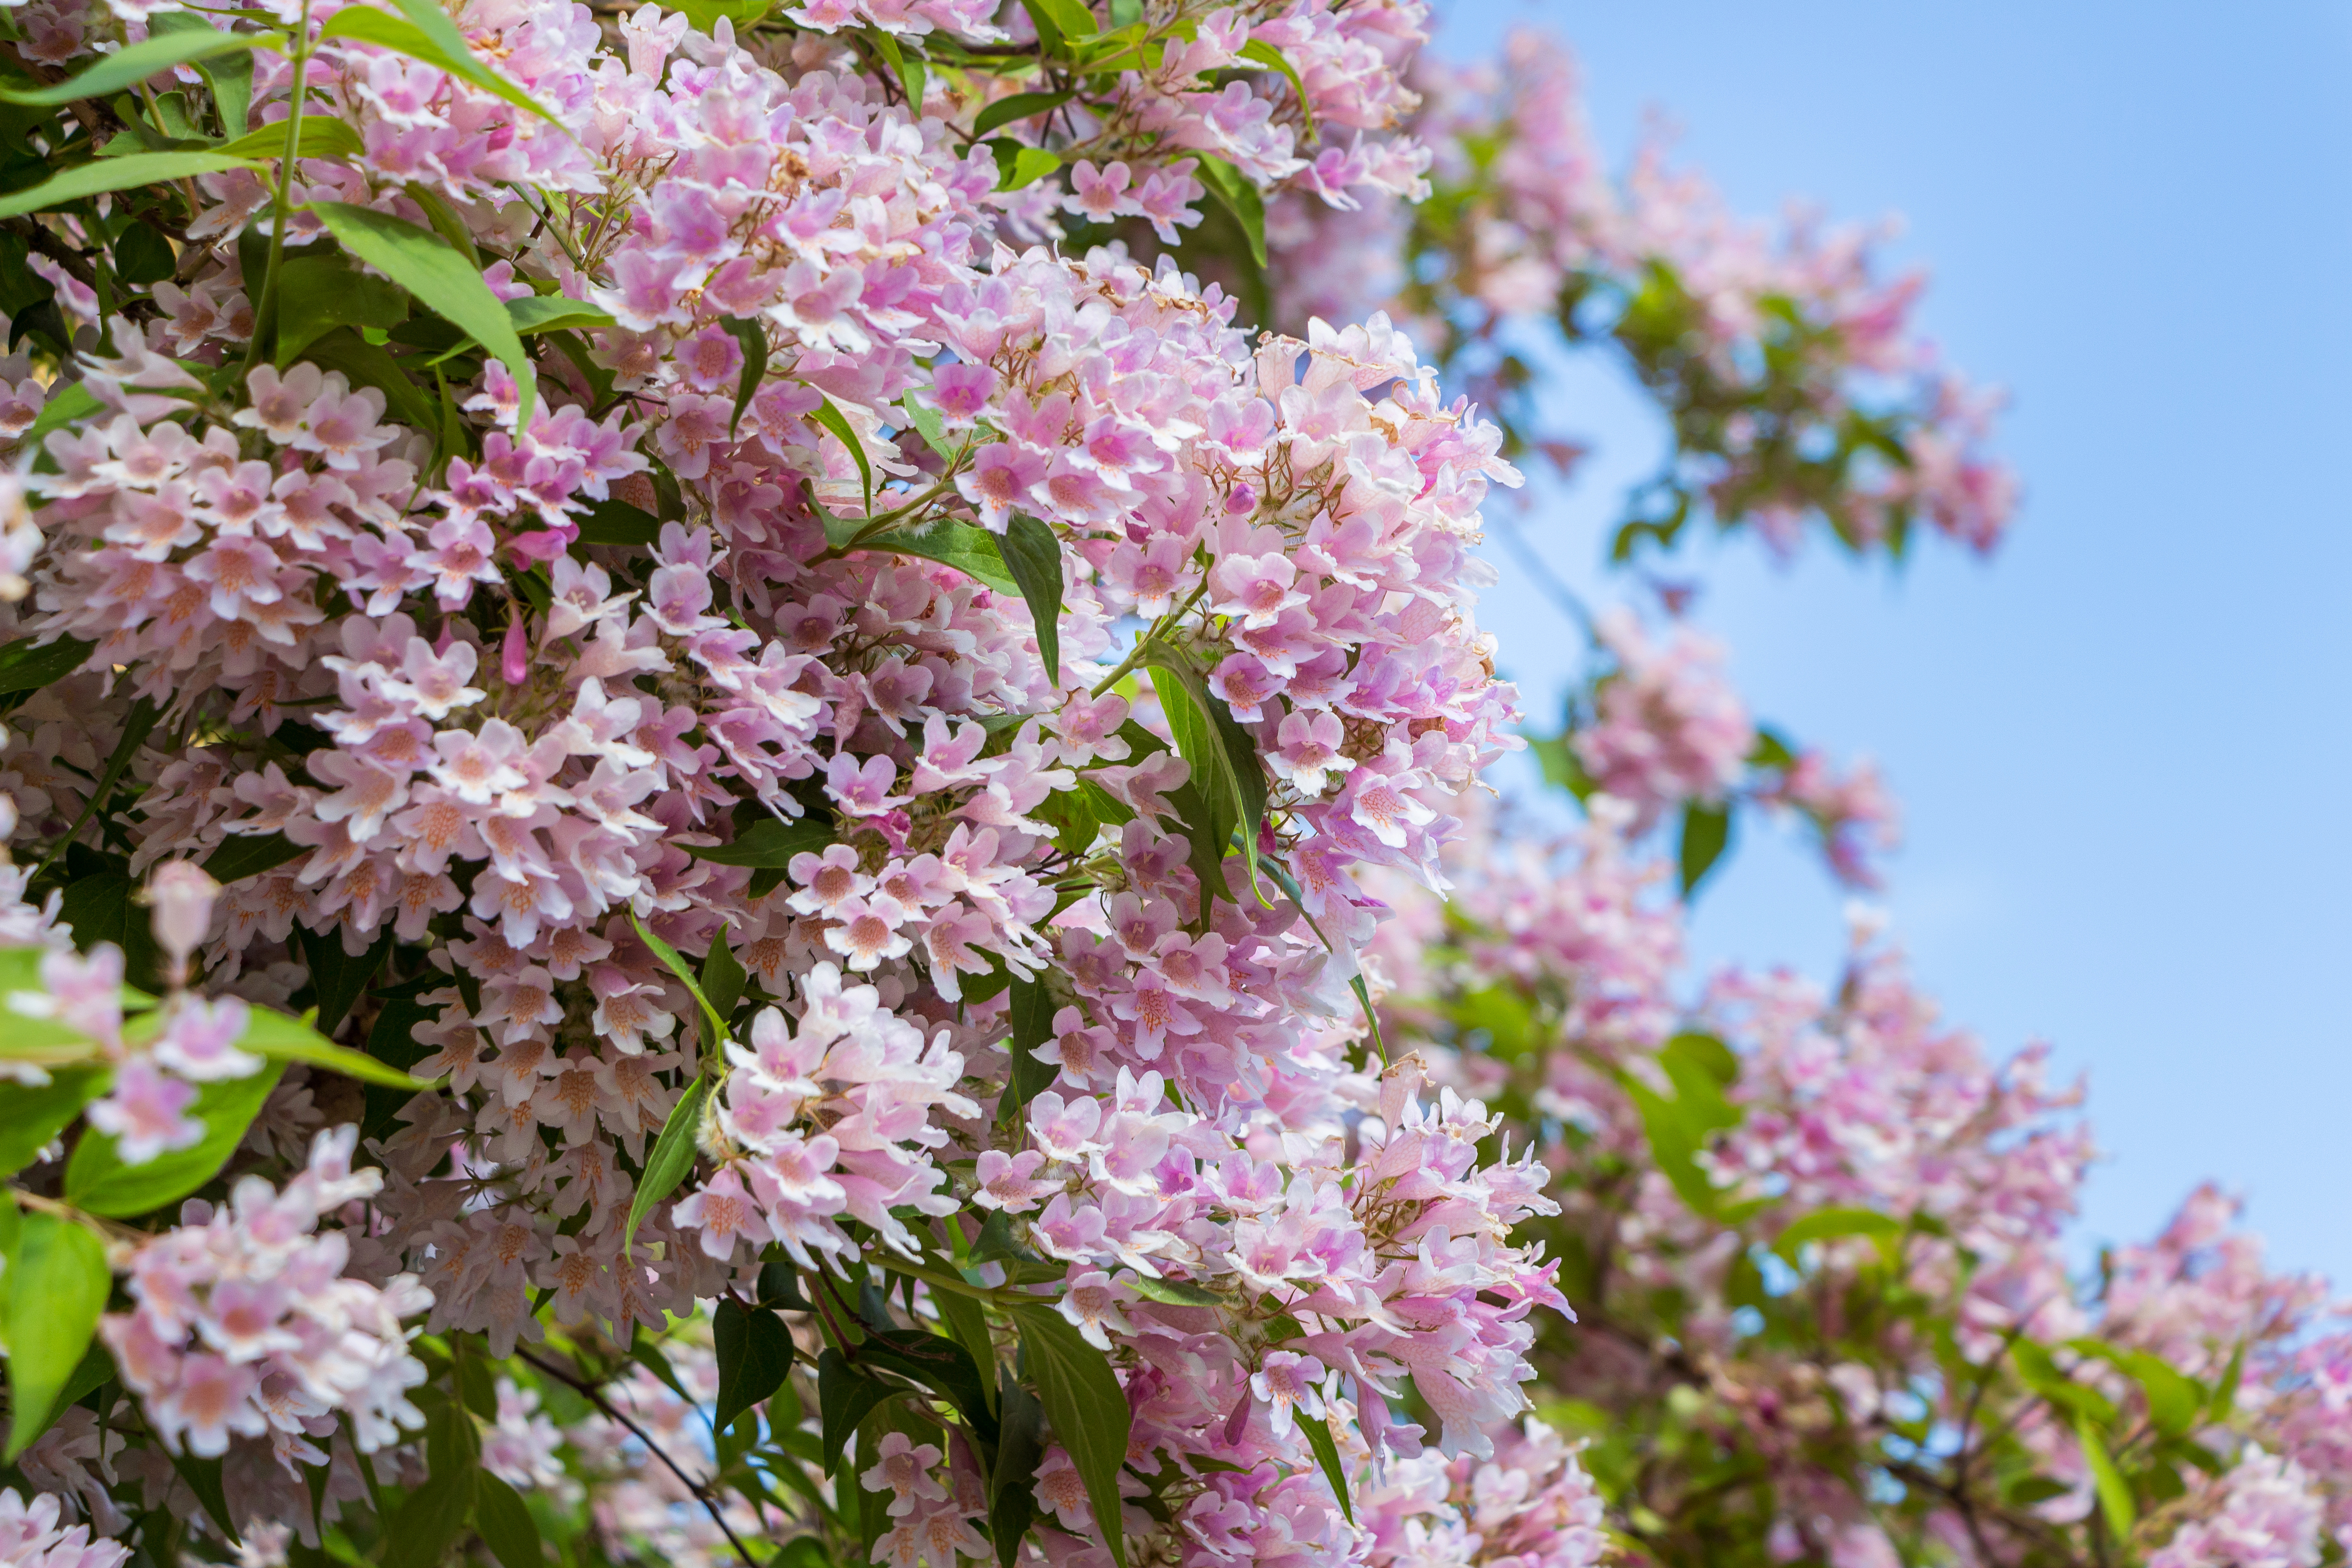 Le Kolkwitzia amabilis, également appelé l’arbuste de beauté, est réputé pour sa facilité de culture et sa résilience face aux différents climats. Copyright (c) 2019 Tatyana Bakul/Shutterstock.